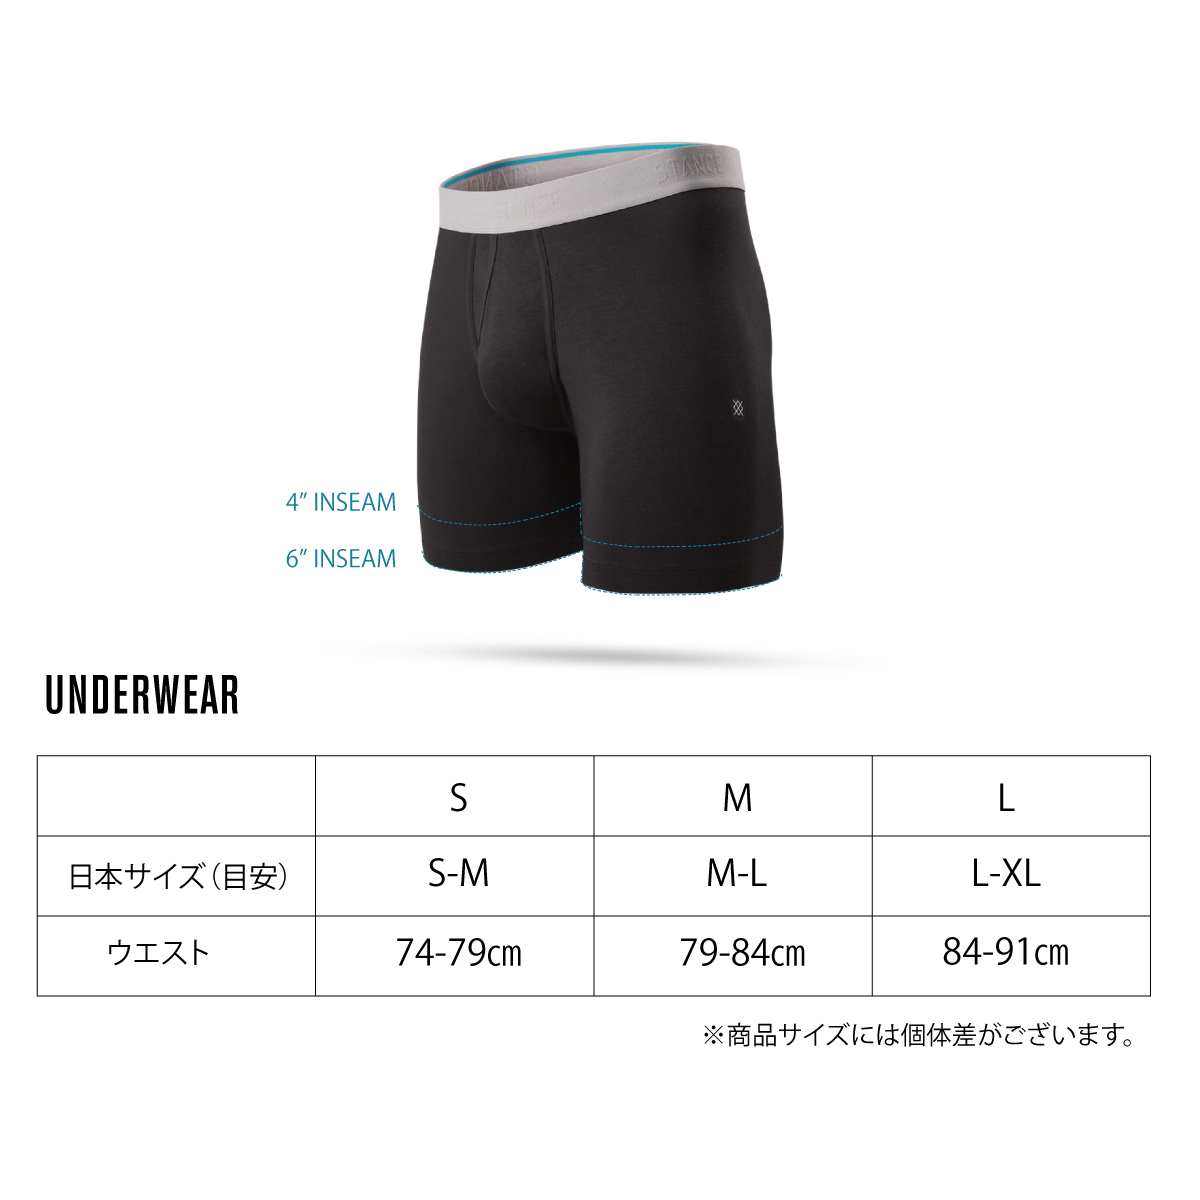 Stance Men's Reflektion Boxer Briefs, Men's Underwear